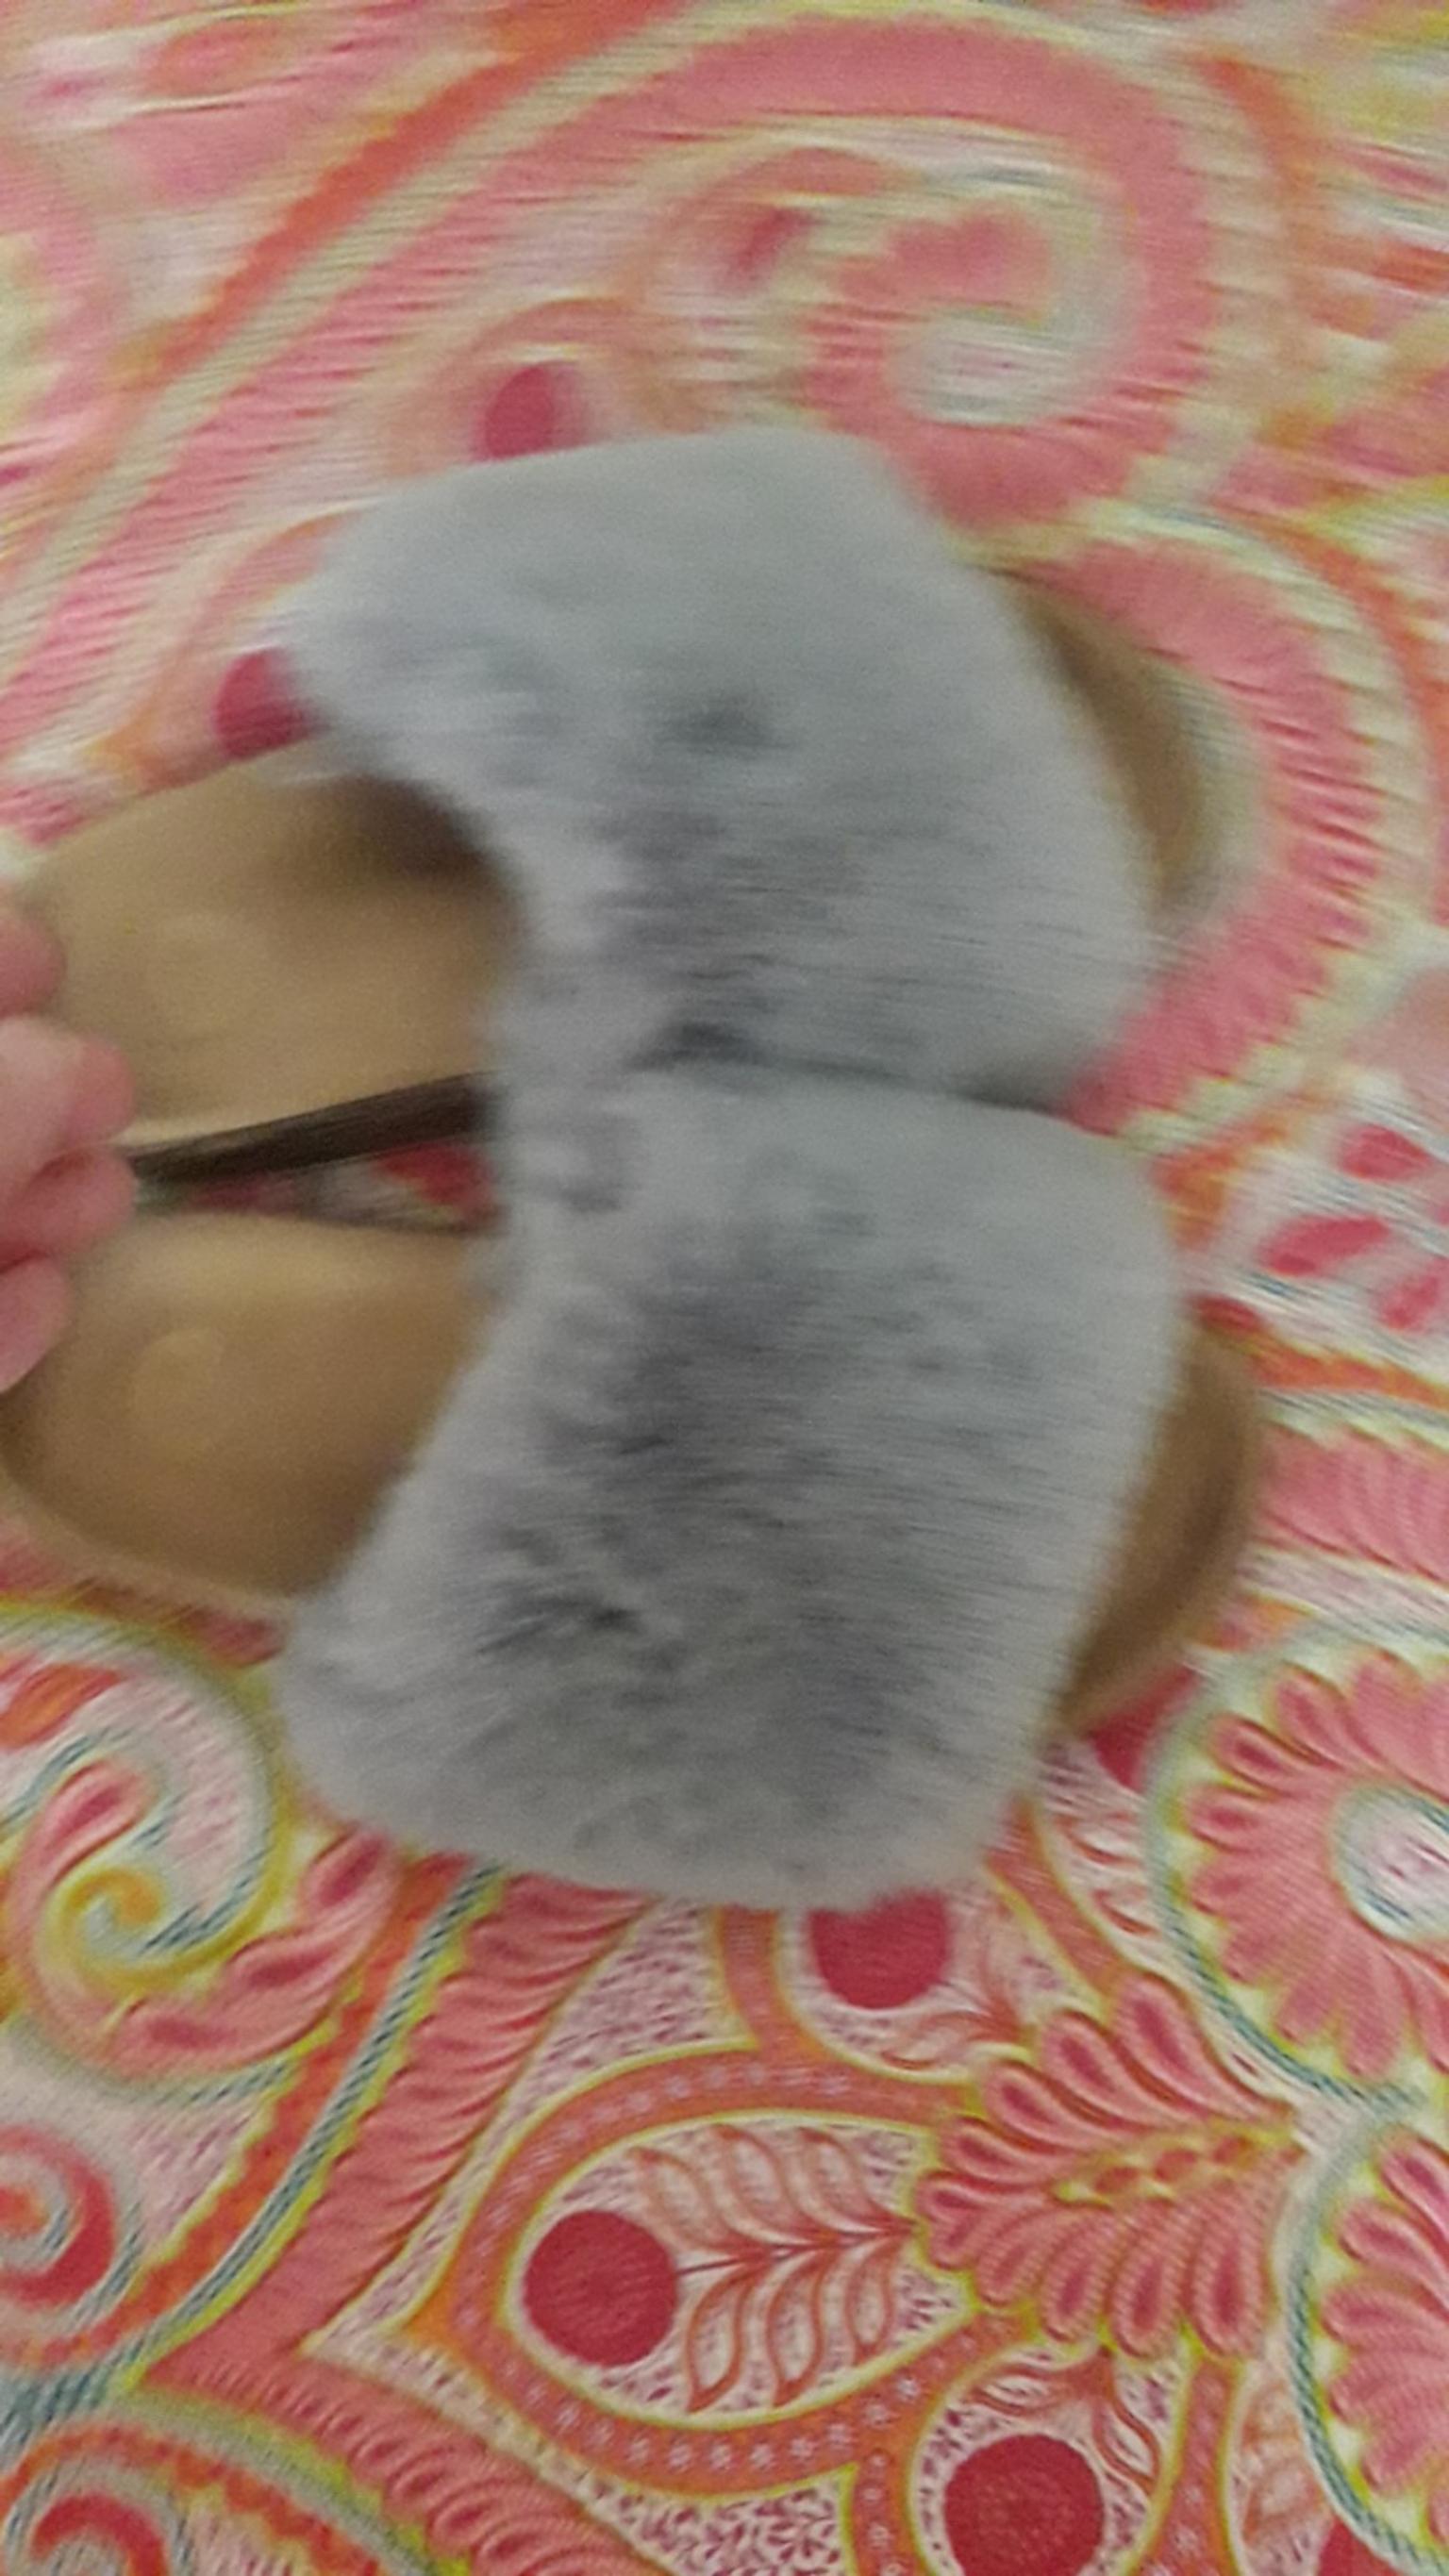 tesco fluffy slippers